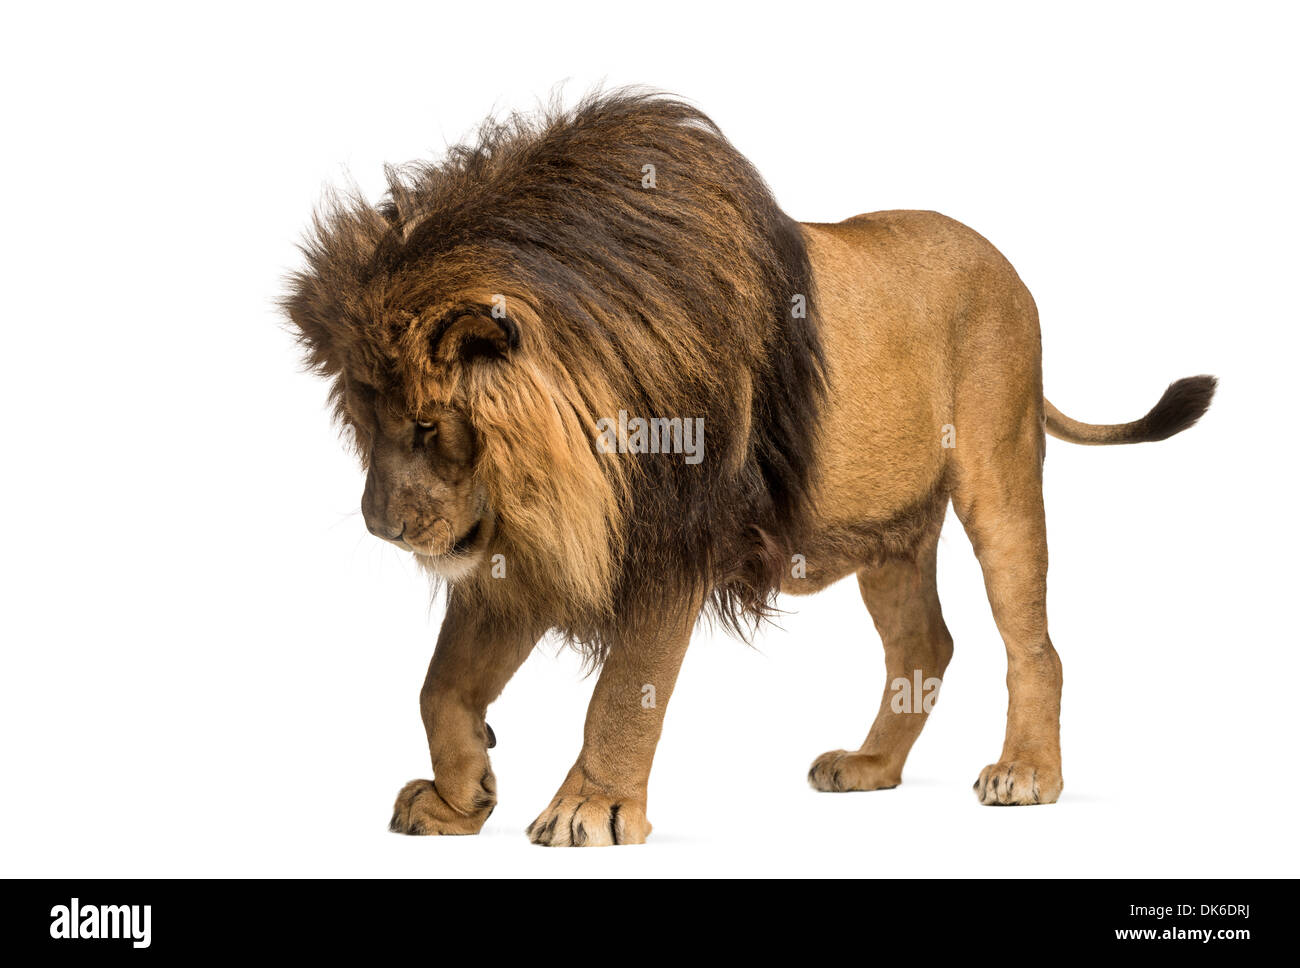 Lion debout, regardant vers le bas, Panthera leo, 10 ans, contre fond blanc Banque D'Images